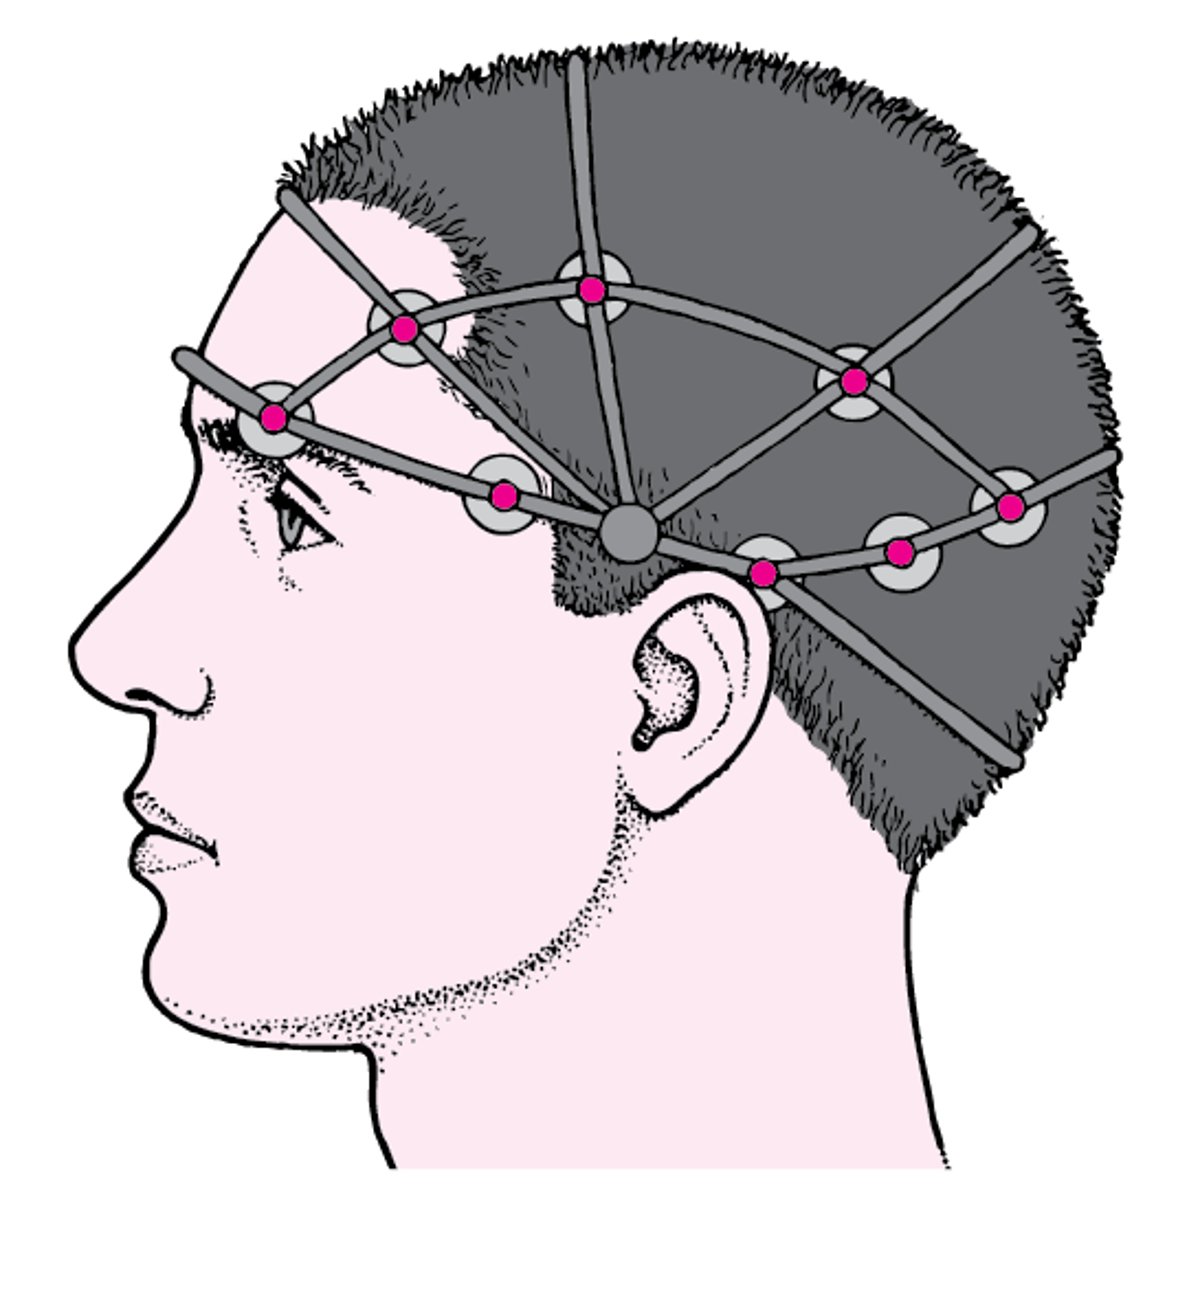 EEG